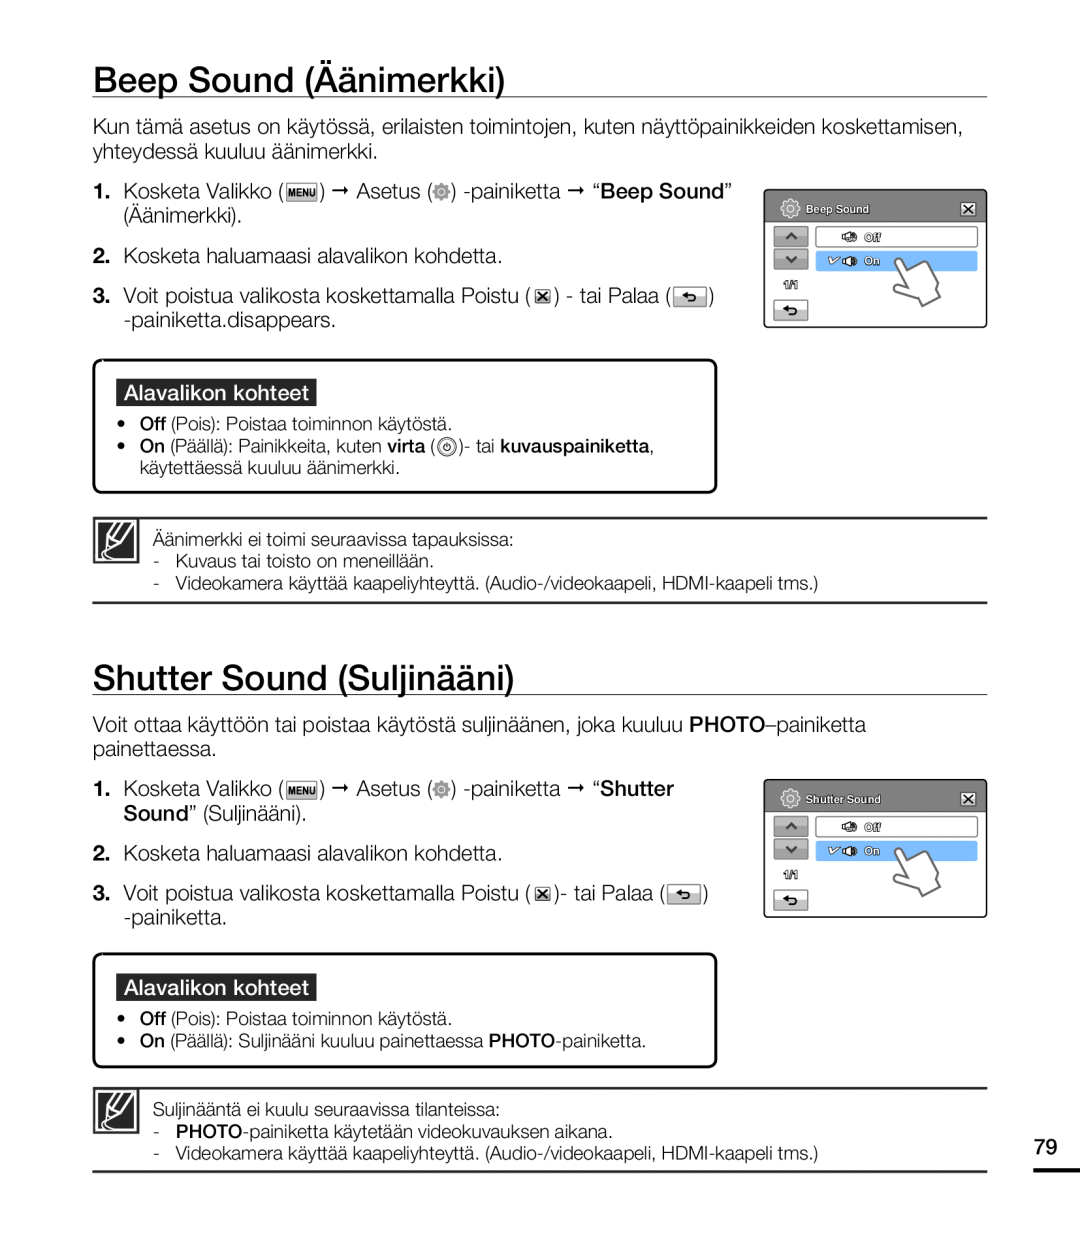 Samsung HMX-T10BP/EDC manual Beep Sound Äänimerkki, Shutter Sound Suljinääni, Kosketa haluamaasi alavalikon kohdetta 